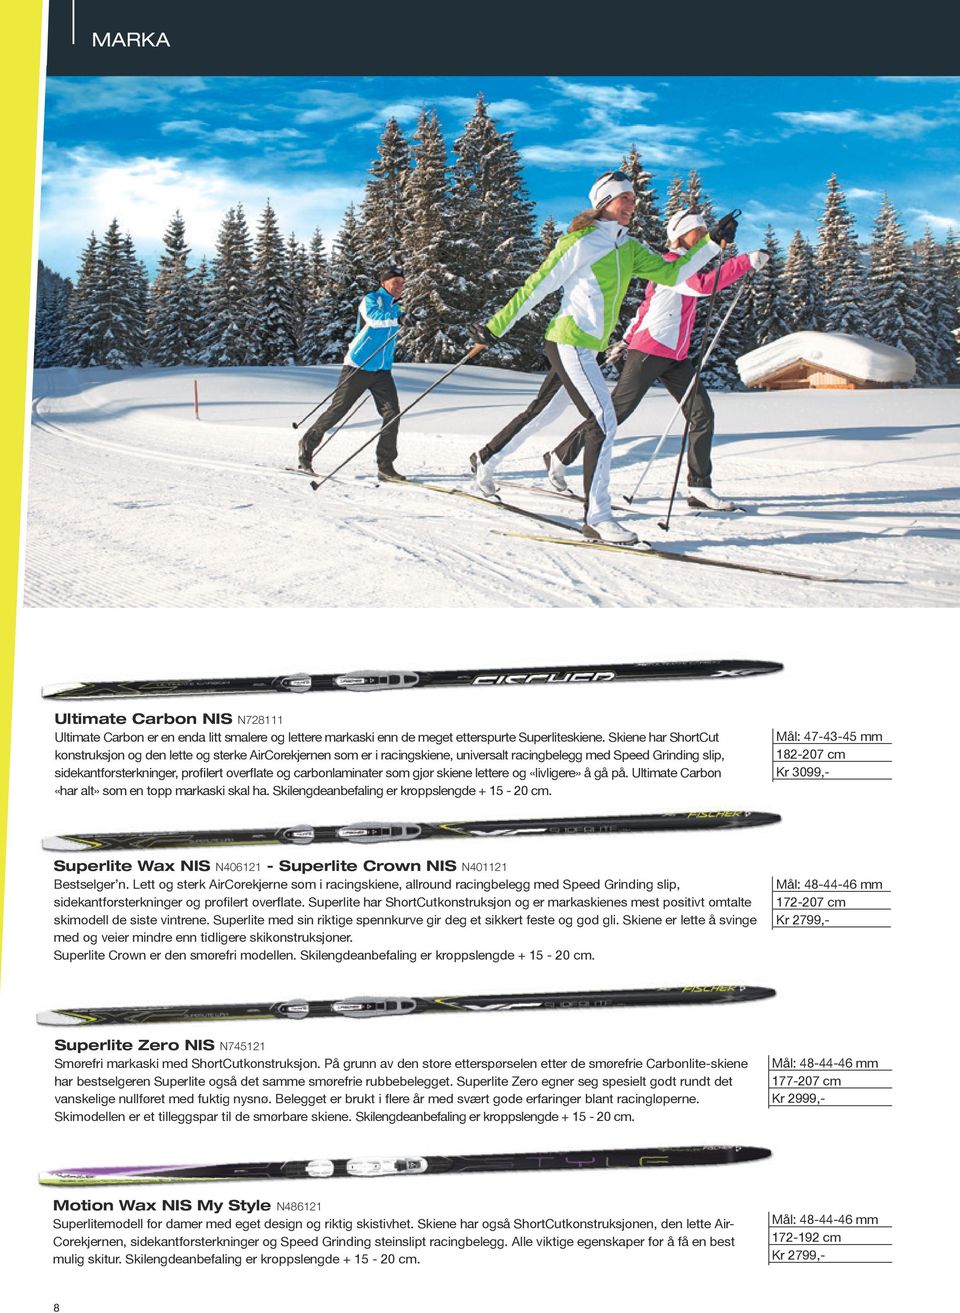 carbonlaminater som gjør skiene lettere og «livligere» å gå på. Ultimate Carbon «har alt» som en topp markaski skal ha. Skilengdeanbefaling er kroppslengde + 15-20 cm.